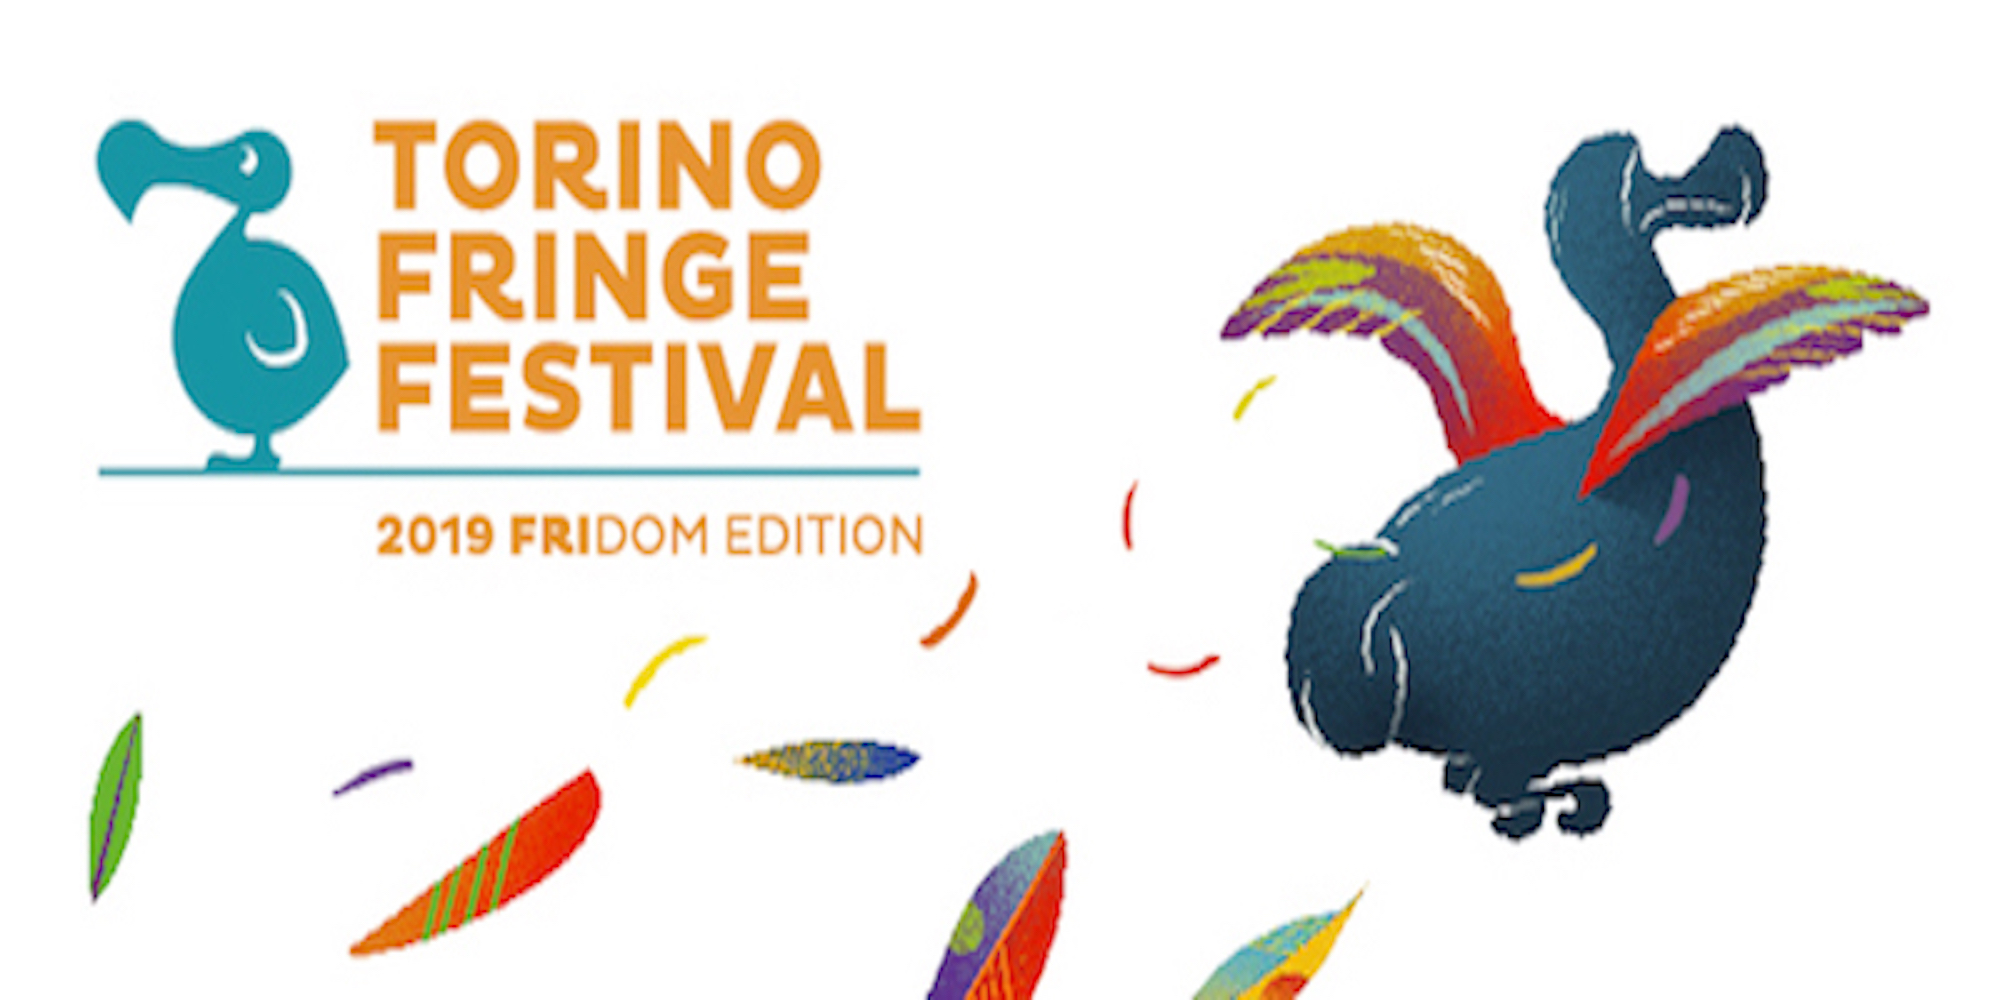 torino fringe festival 2019